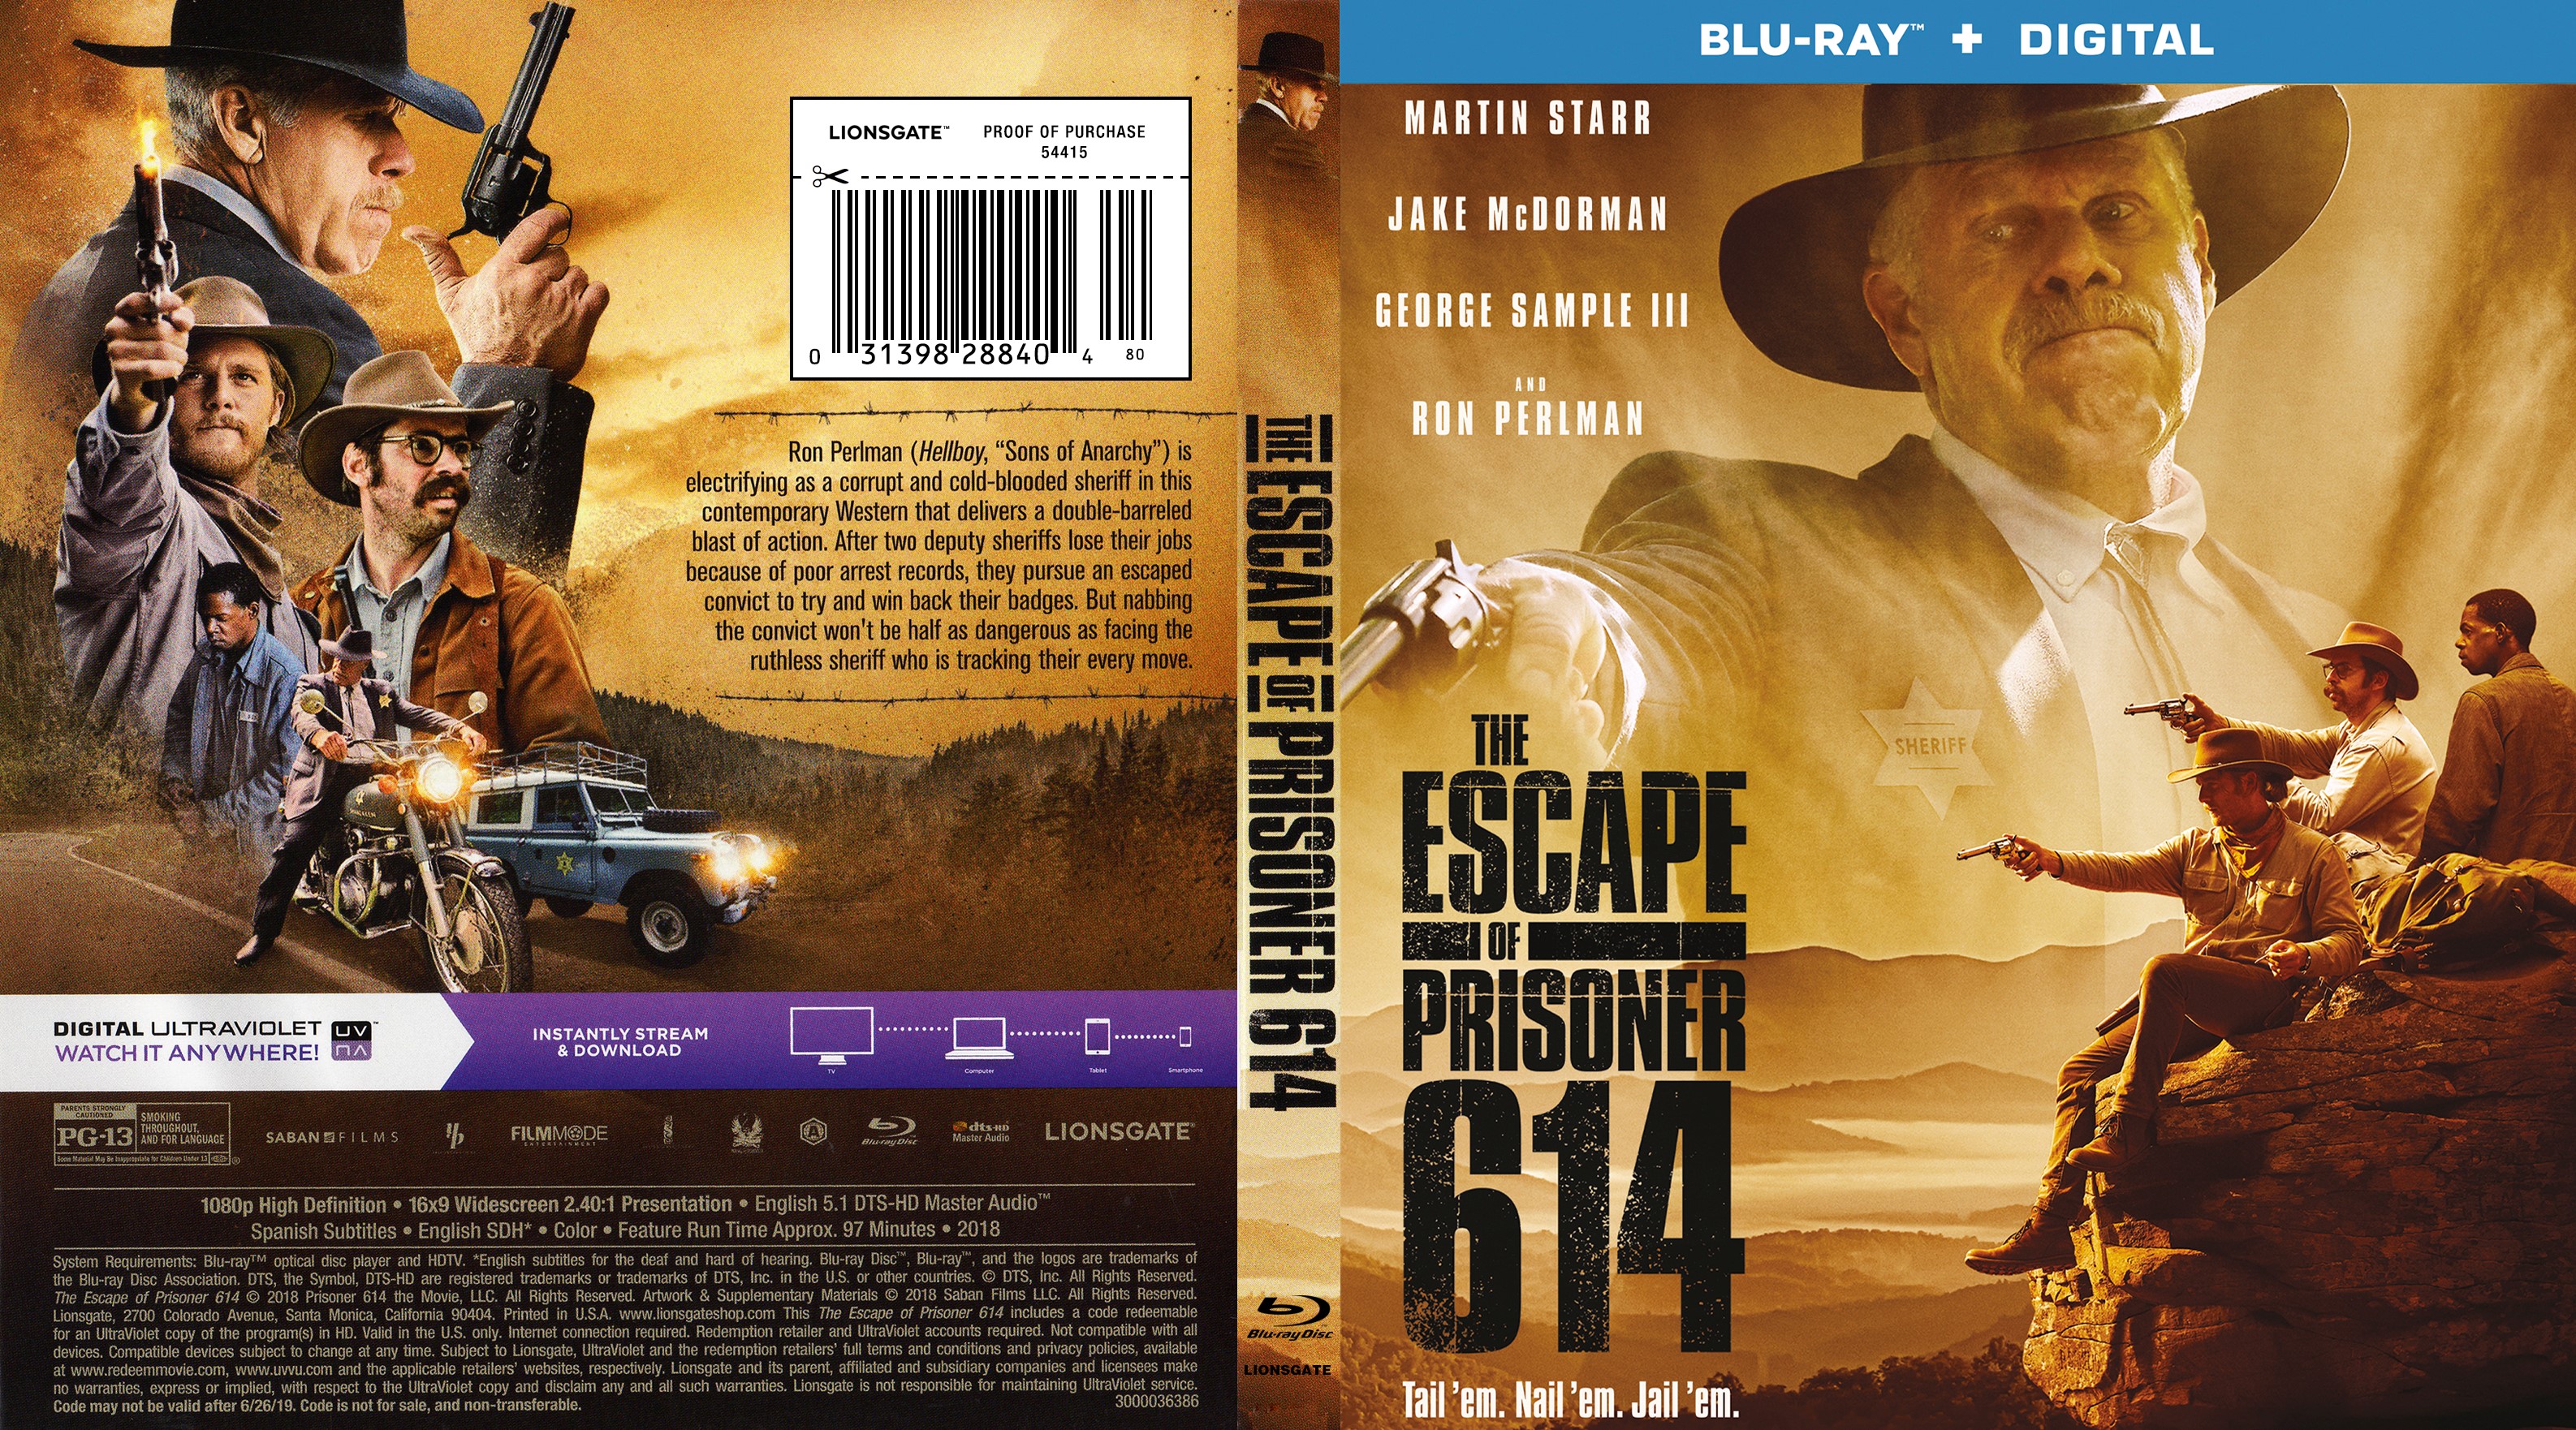 escape of prisoner 614